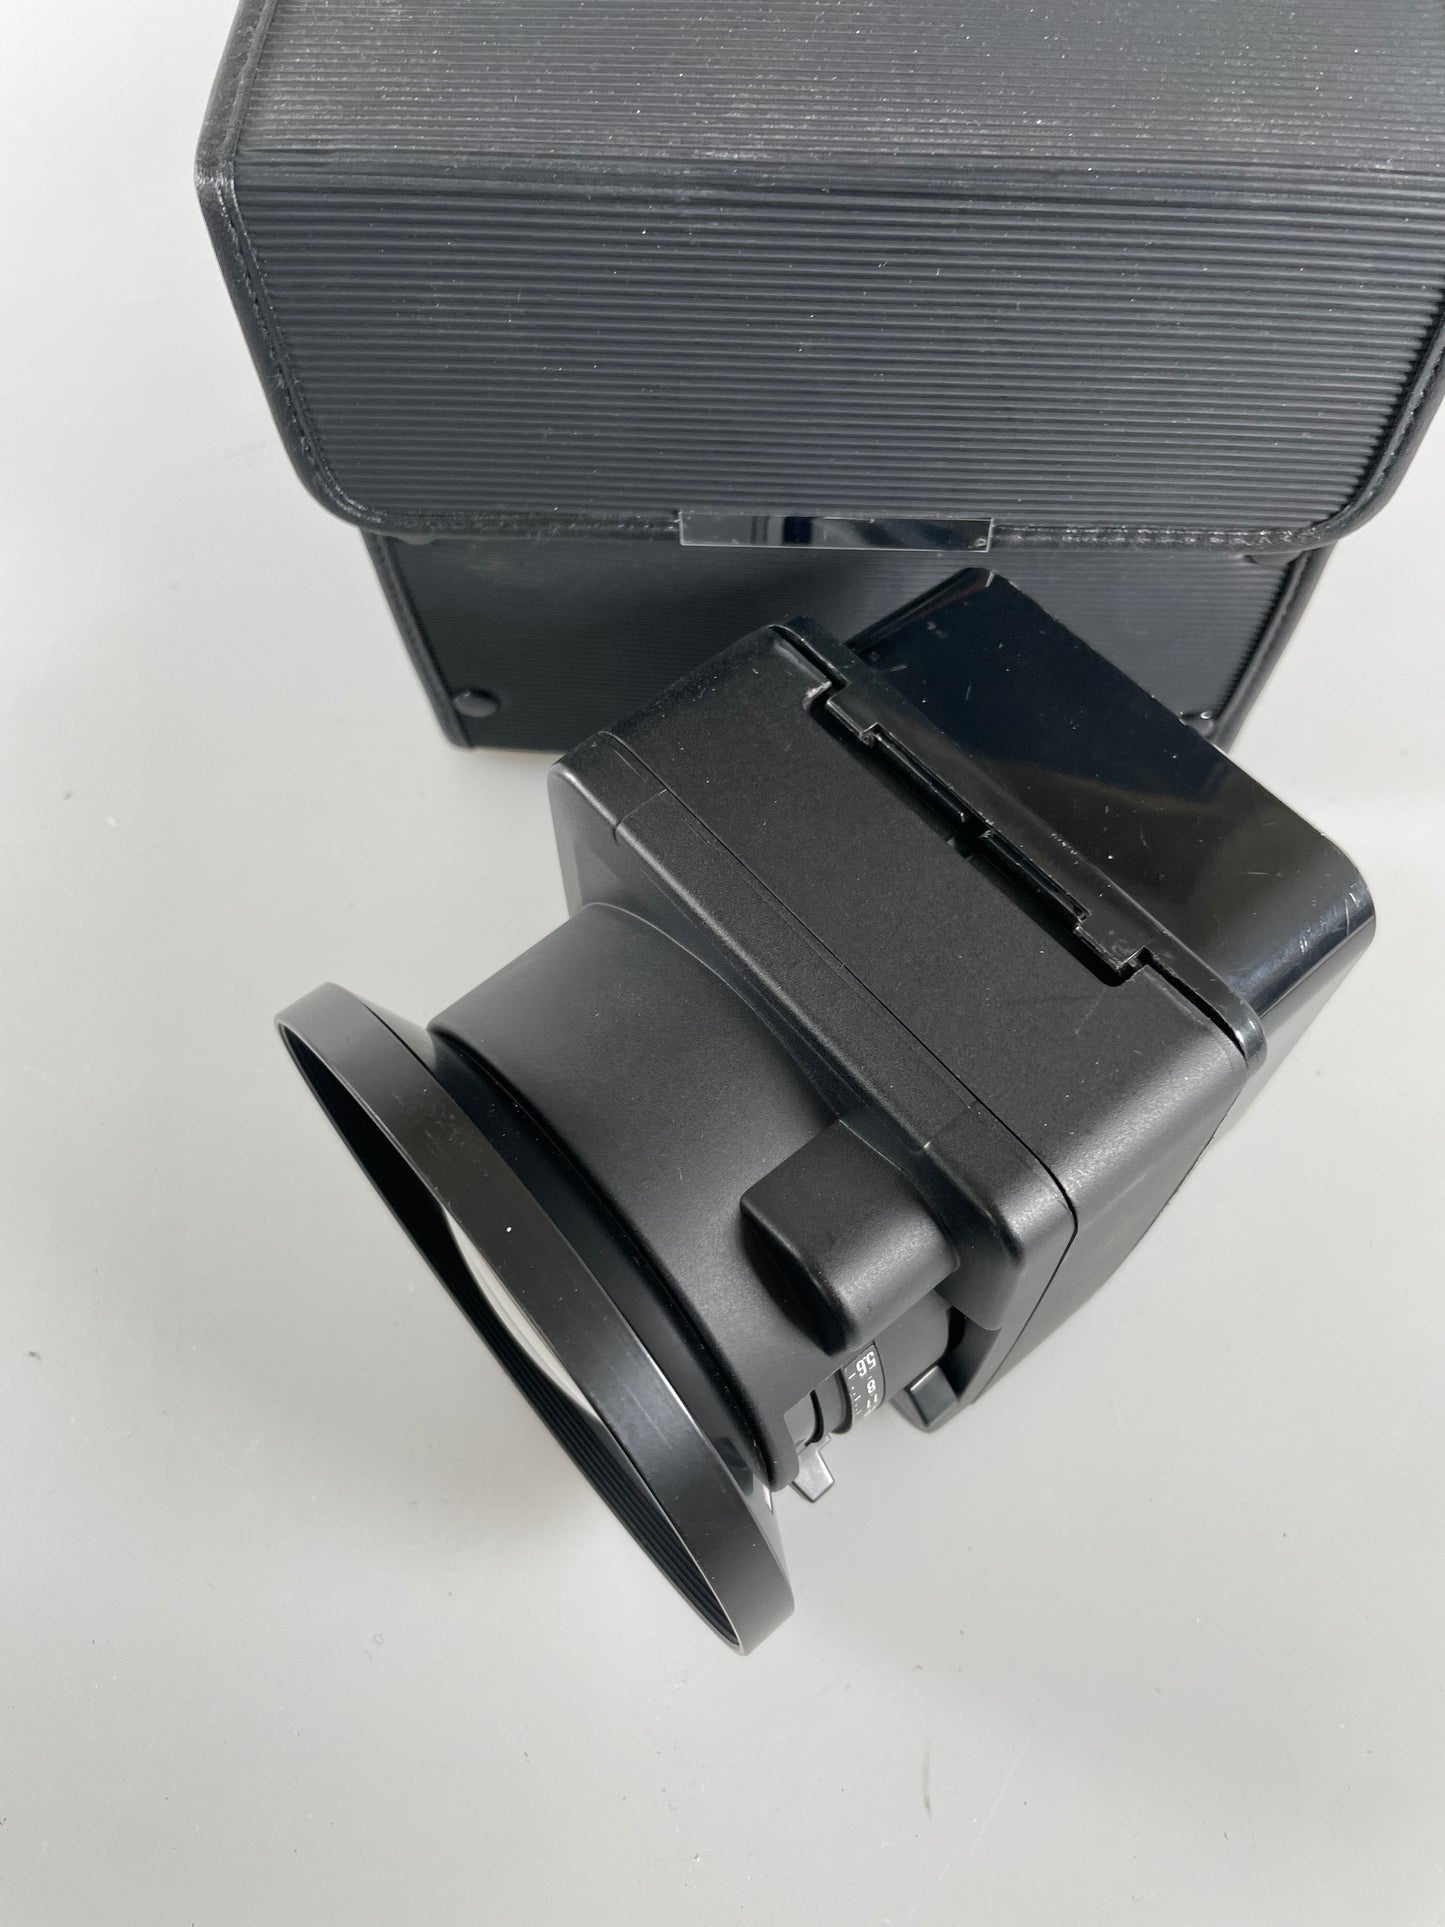 Fujifilm EBC Fujinon GX M 50mm f5.6 Wide lens for FUJI GX680 w/ Case